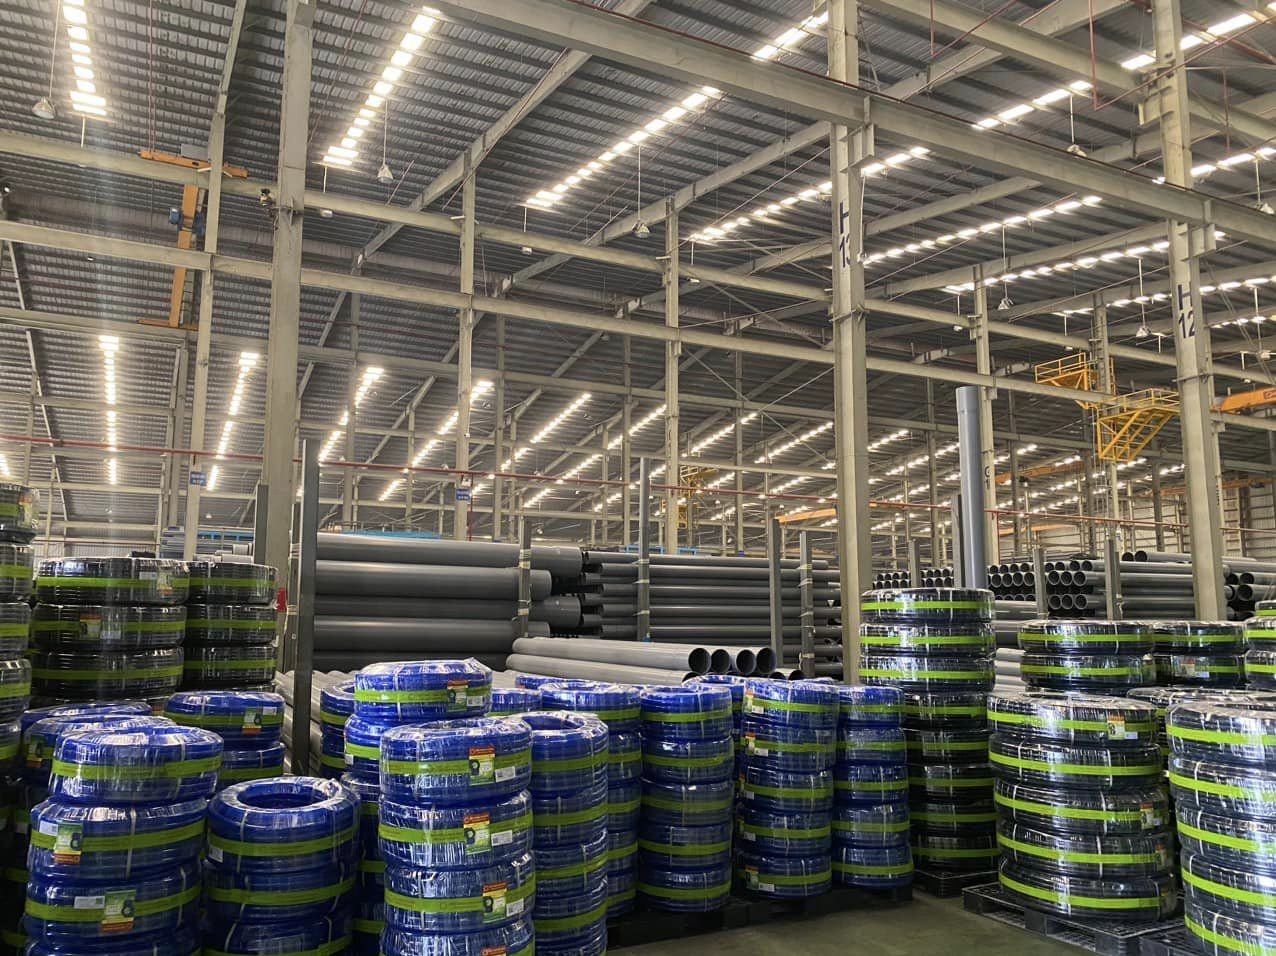 Đại lý ống nhựa LDPE Hoa Sen dùng trong tưới tiêu nông nghiệp tại tỉnh Quảng Ninh